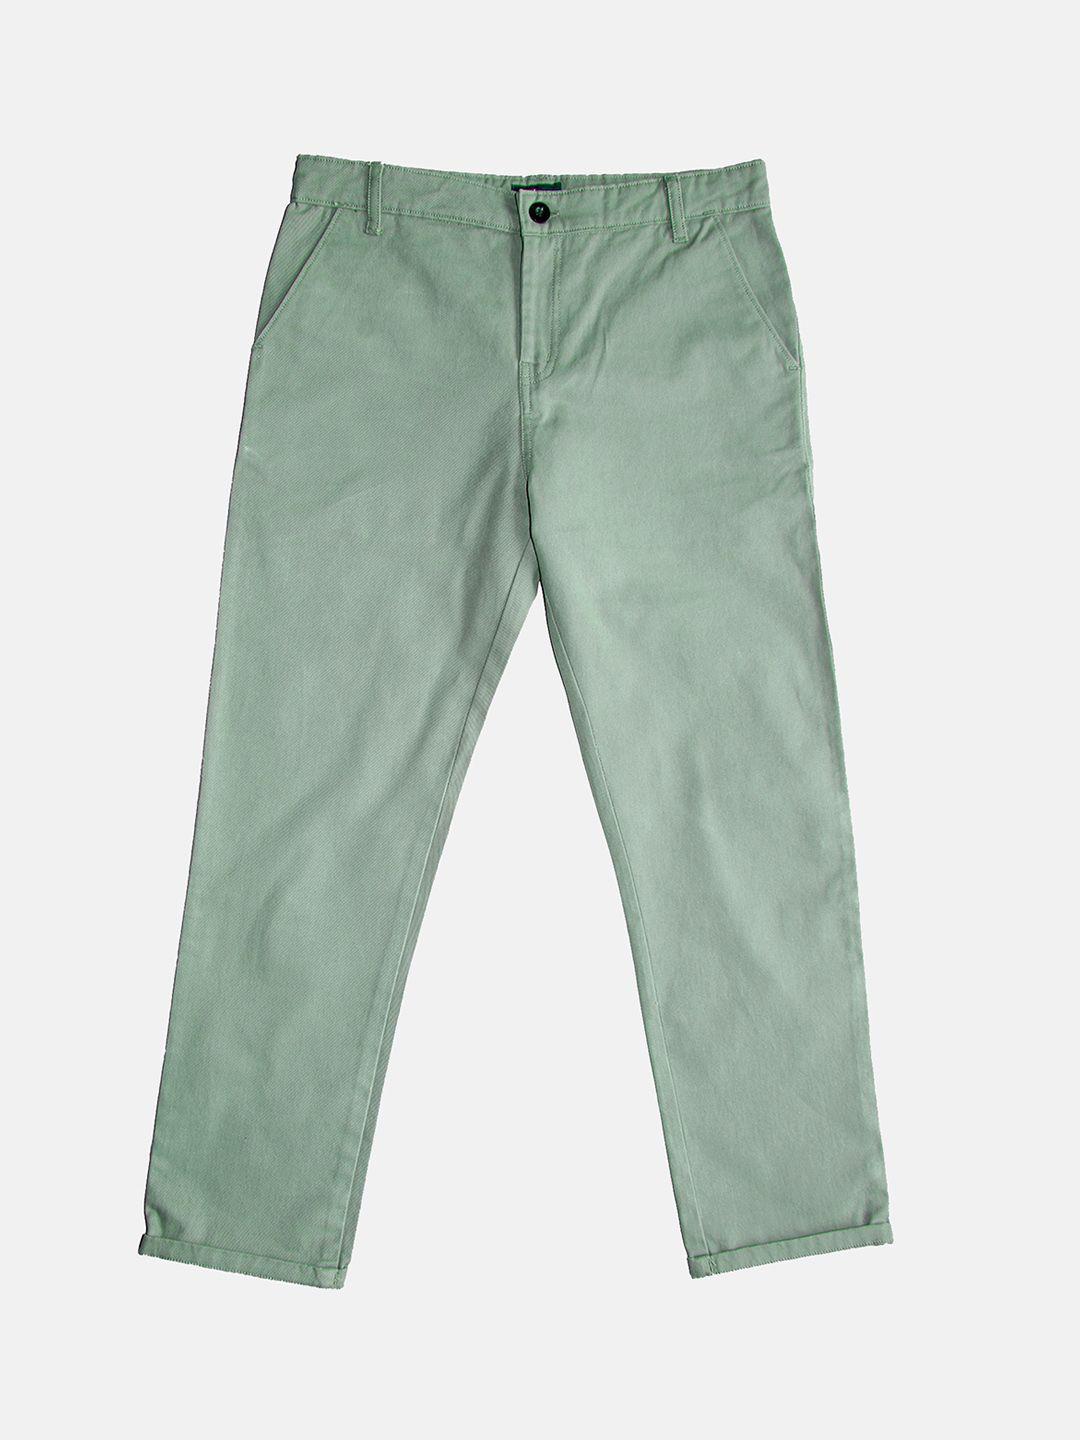 kiddopanti-boys-pure-cotton-chinos-trousers